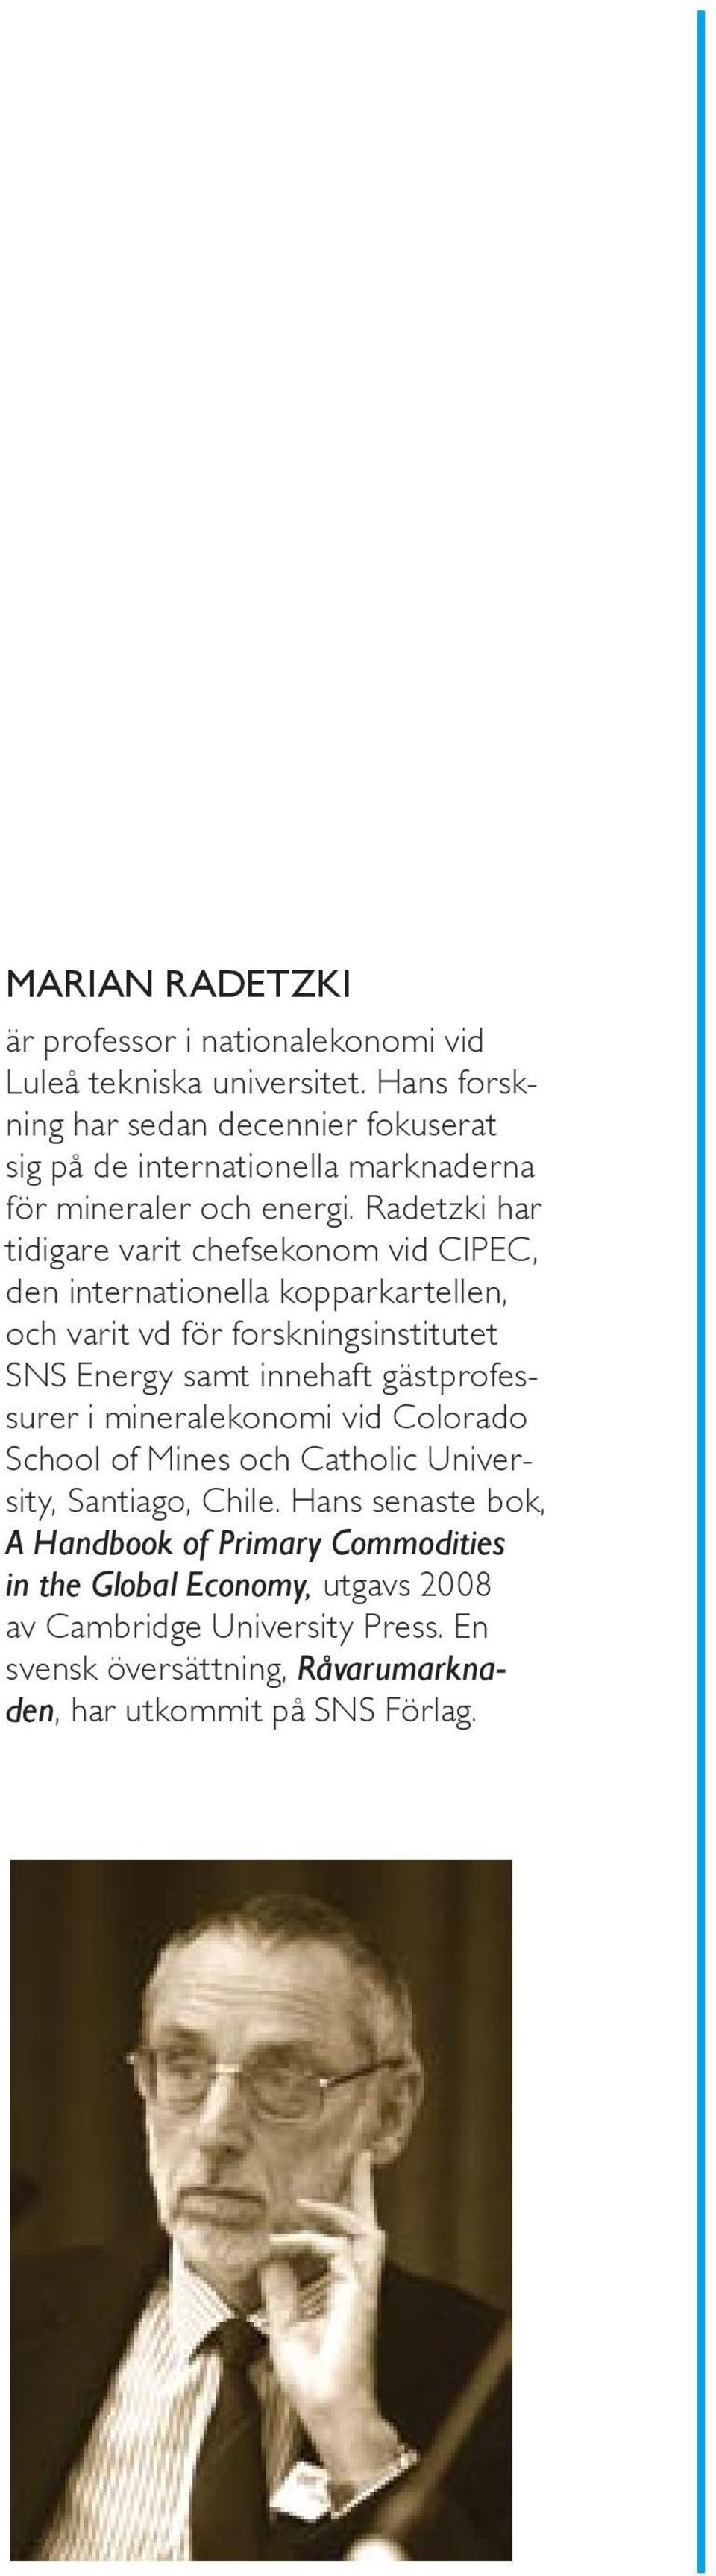 Radetzki har tidigare varit chefsekonom vid CIPEC, den internationella kopparkartellen, och varit vd för forskningsinstitutet SNS Energy samt innehaft